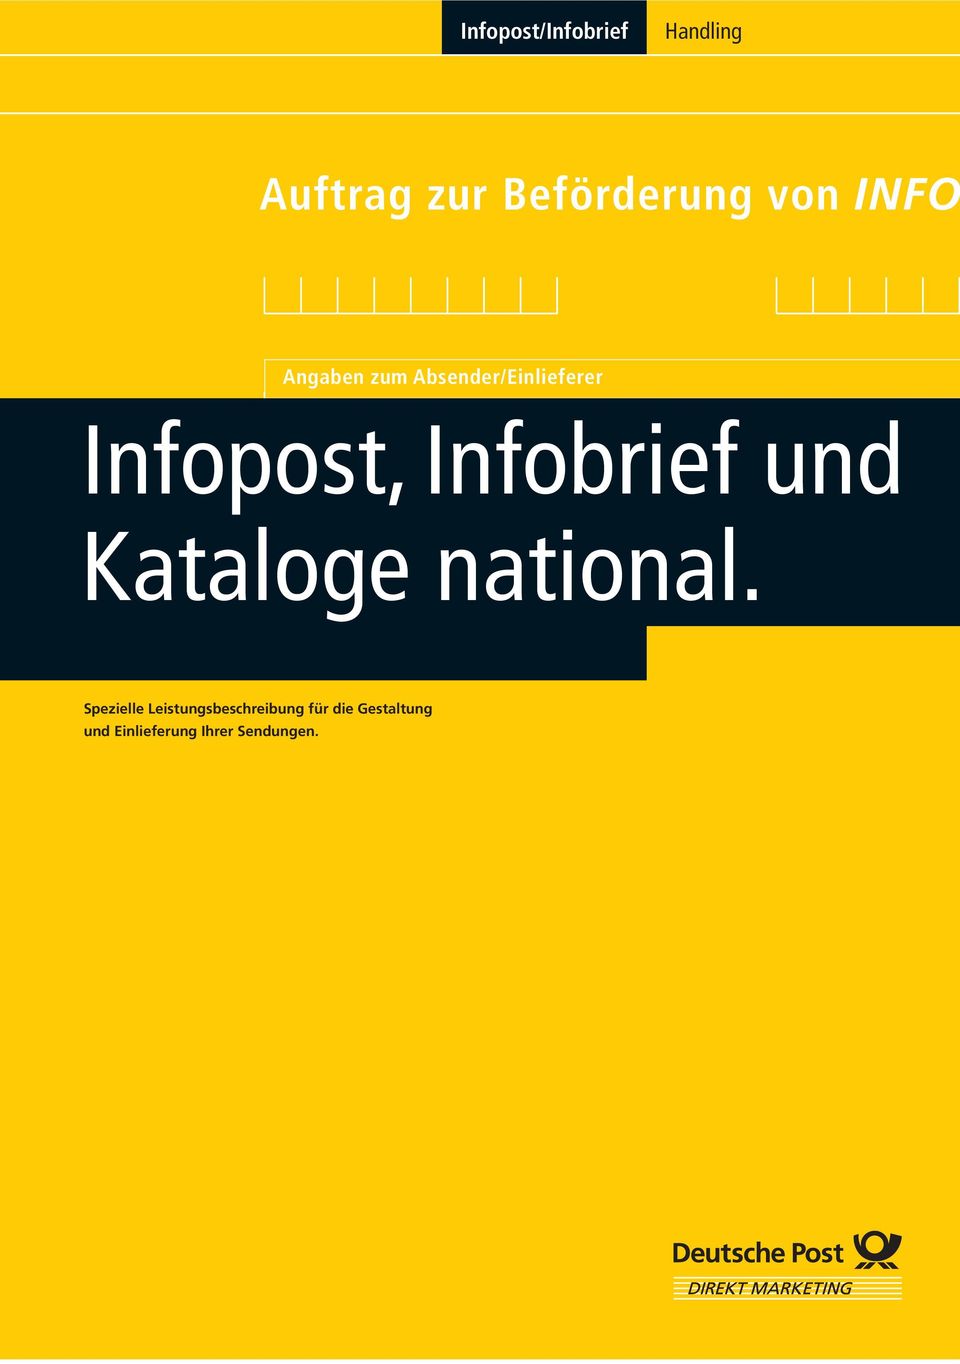 Infobrief und Kataloge national.